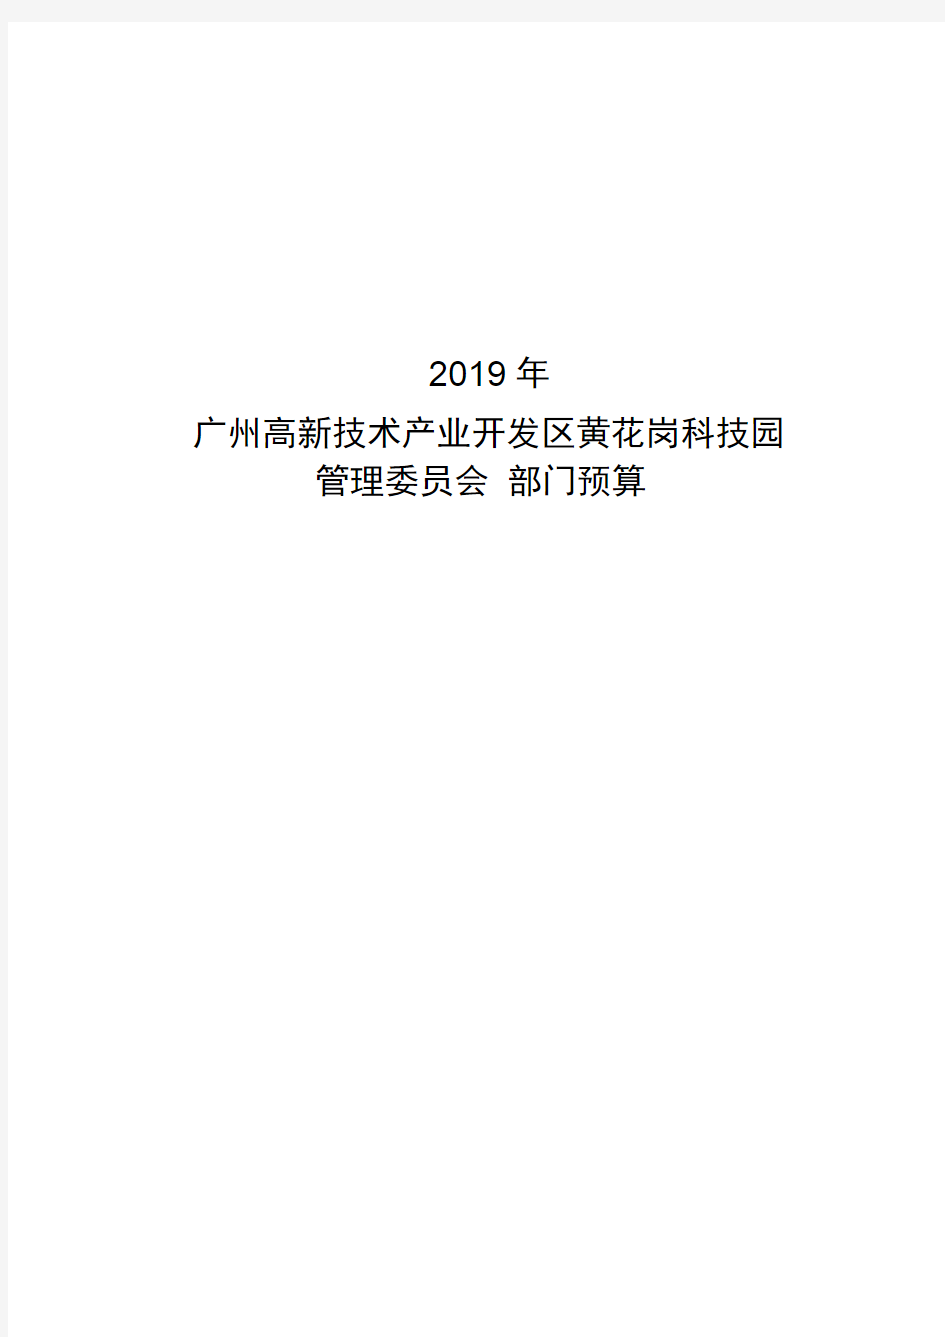 2019年广州高新技术产业开发区黄花岗科技园管理委员会